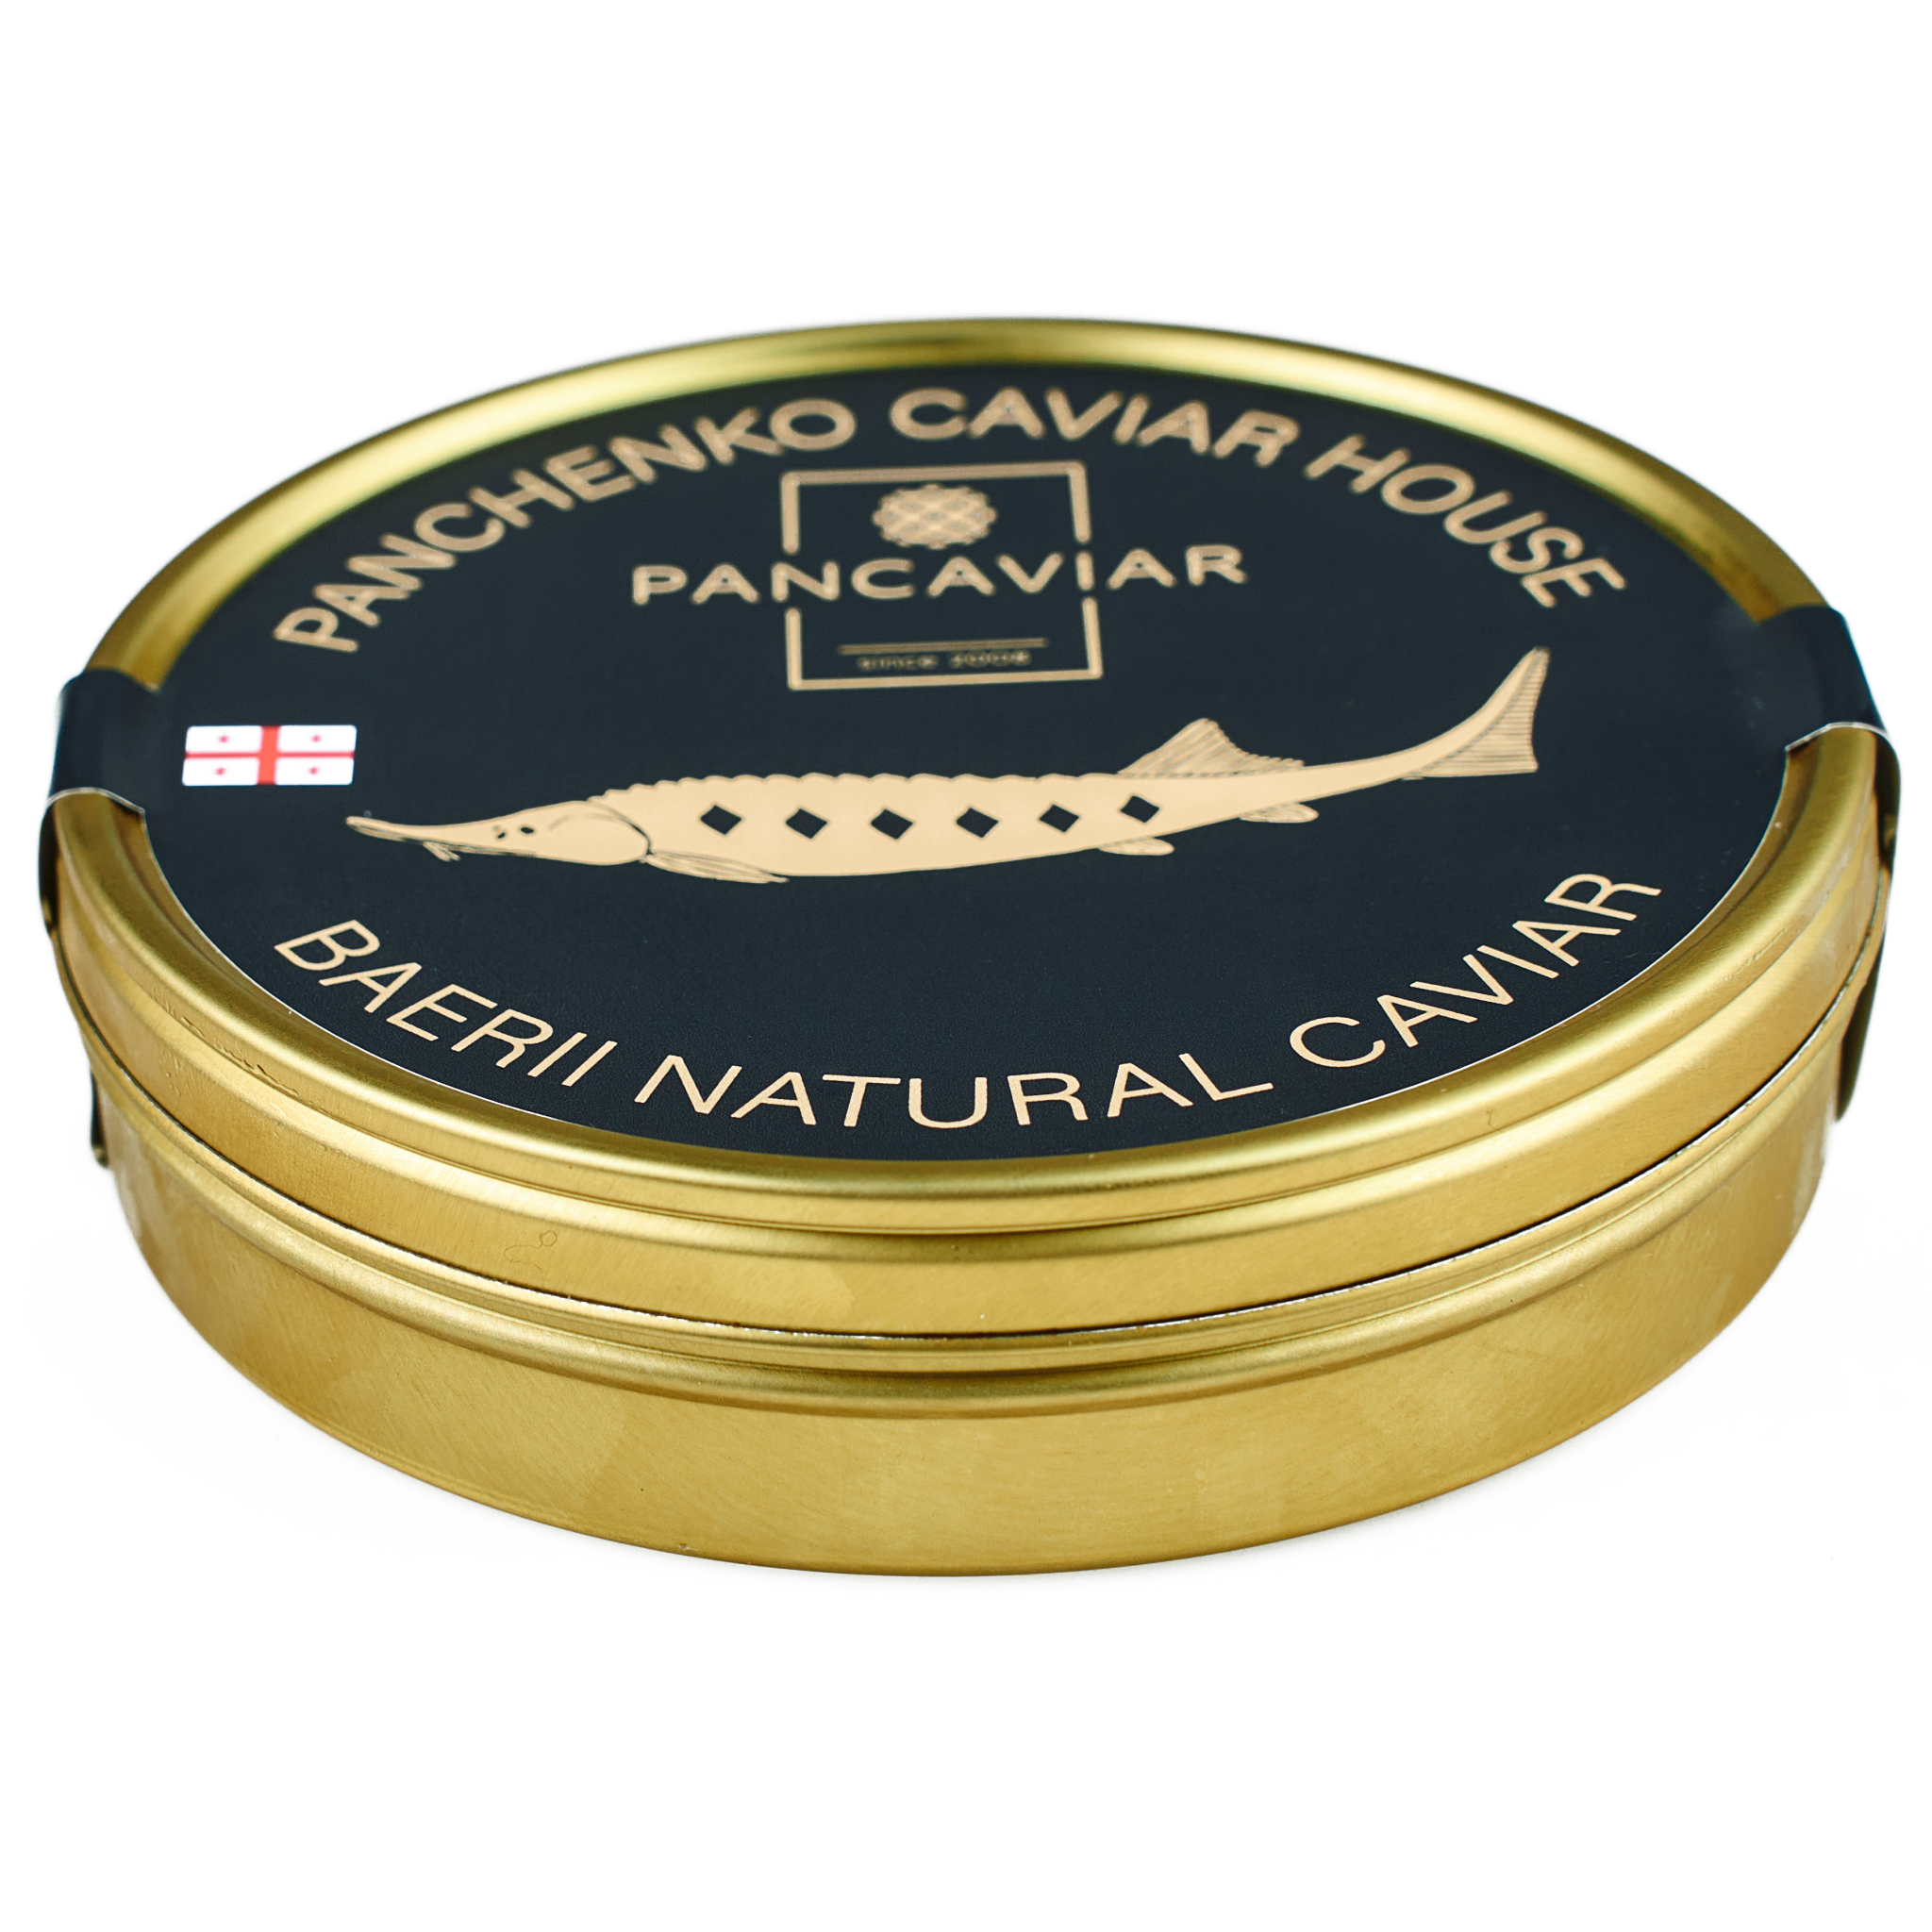 Osetra Caviar Imperial Tin - Global Caviar